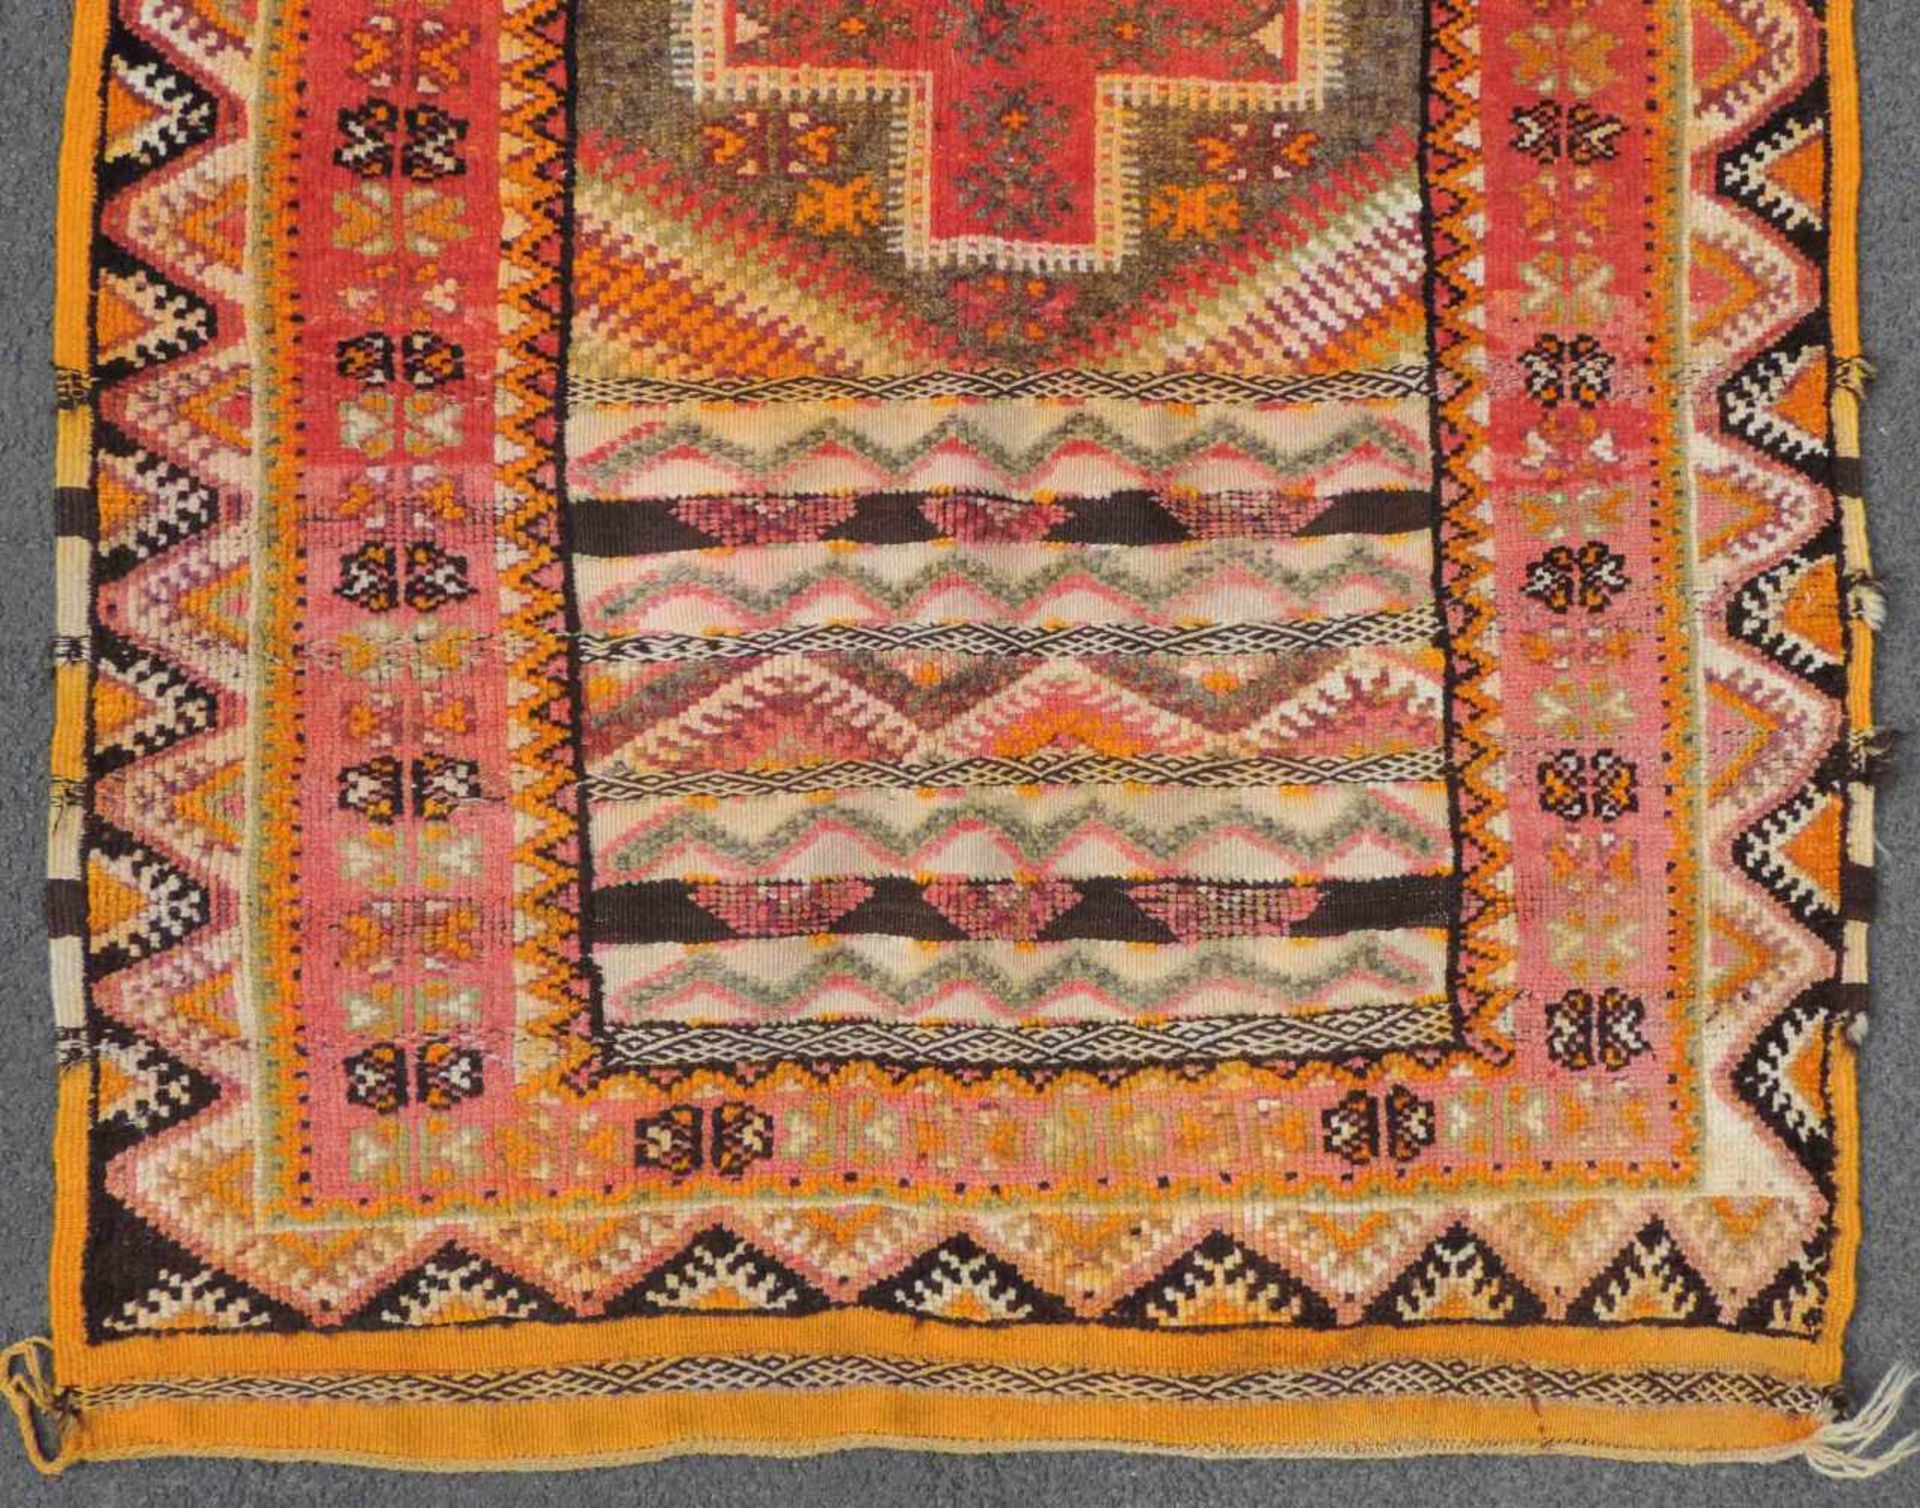 Atlas Teppich. Marokko. Alt, Mitte 20. Jahrhundert. 185 cm x 103 cm. Handgeknüpft und handgewebt. - Bild 2 aus 8